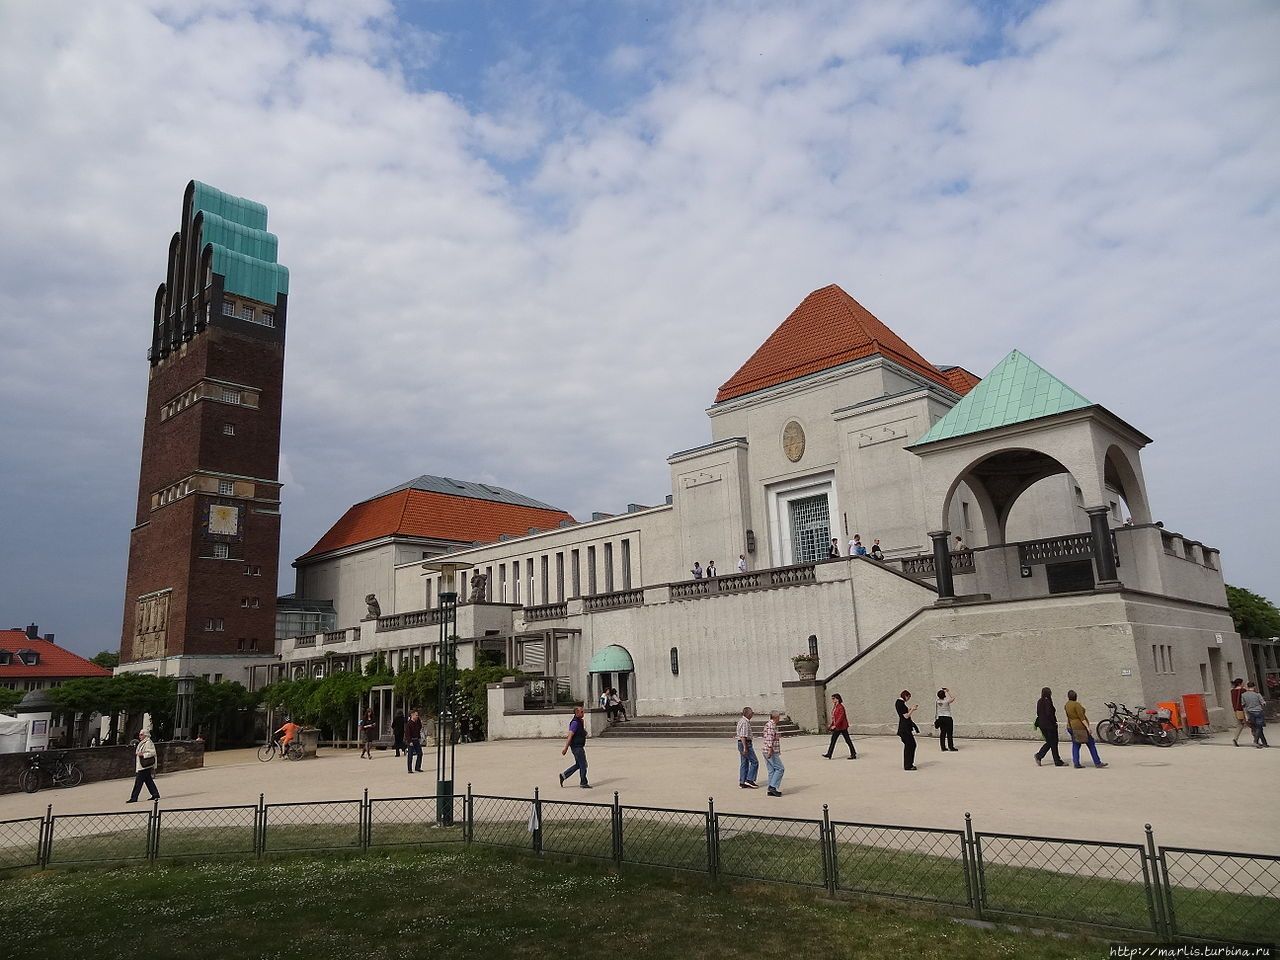 Последняя работа Ольбриха в Дармштадте — Выставочный зал и Свадебная башня (1907–1908). Крыша башни имеет форму руки, десница Божия, охраняющая Дармштадт  (фото из Интернета) Дармштадт, Германия